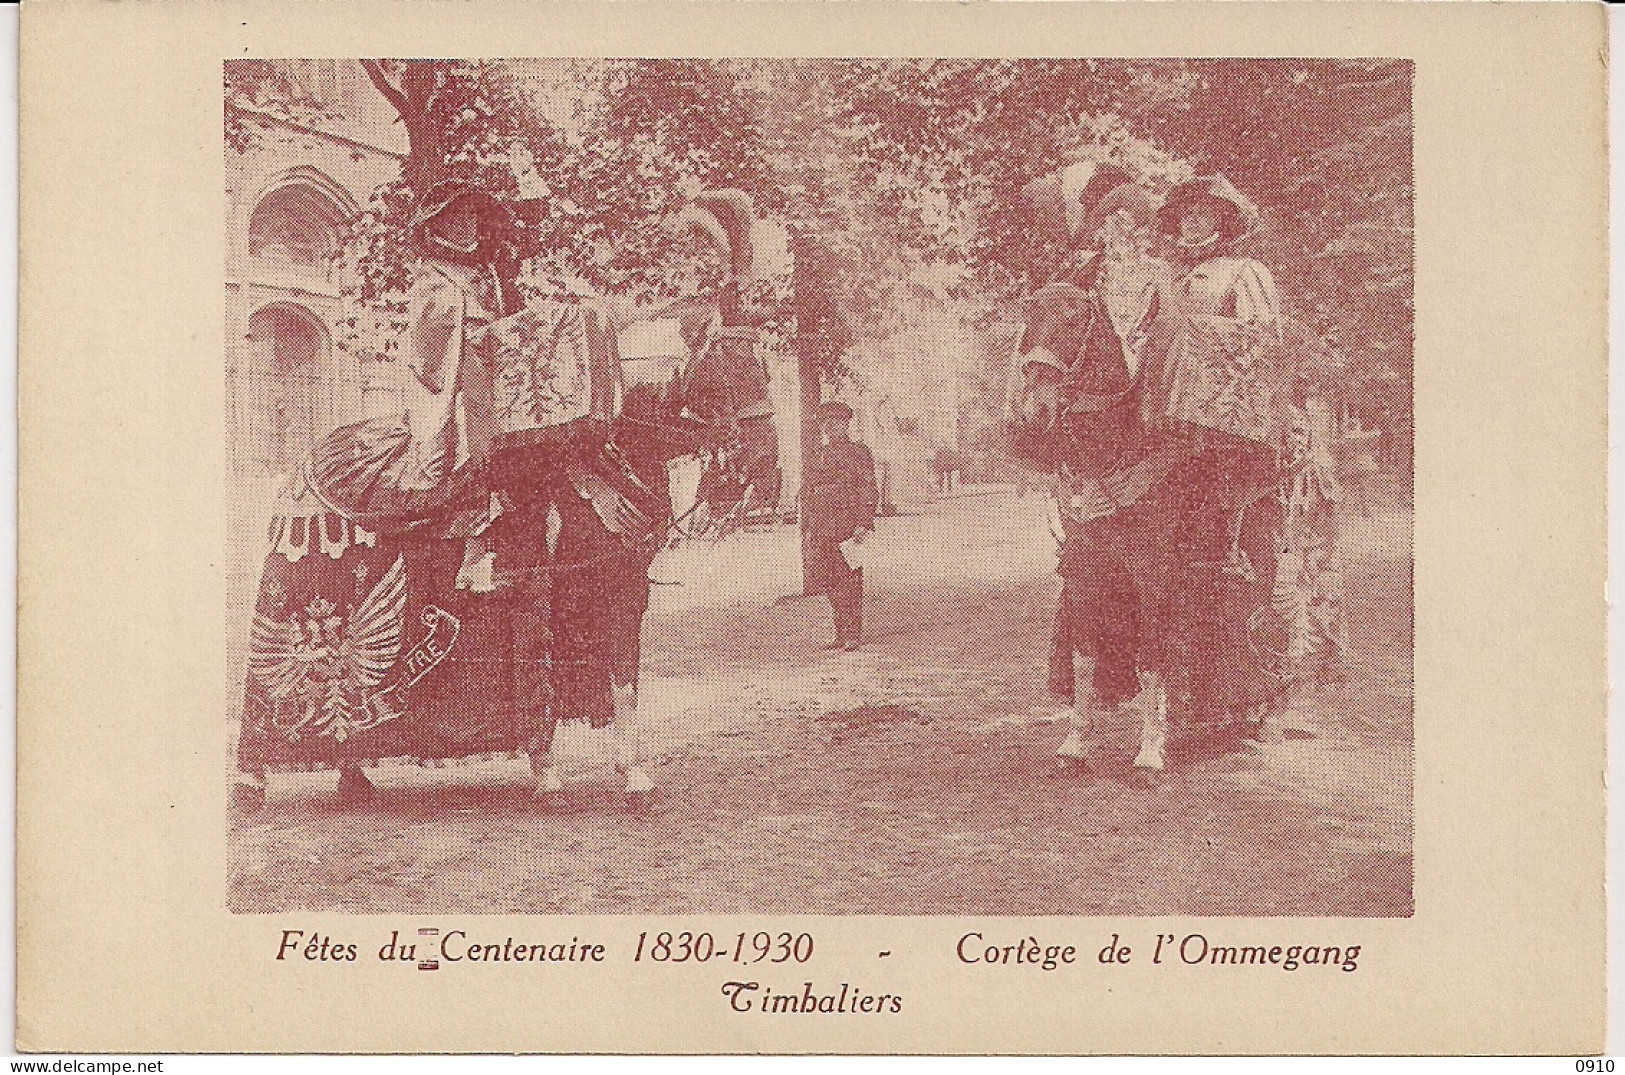 BRUXELLES-BRUSSEL " FETES DU CENTENAIRE 1830-1930-CORTEGE DE L'OMMEGANG-TIBALIERS-PAUKENISTEN" - Festivals, Events